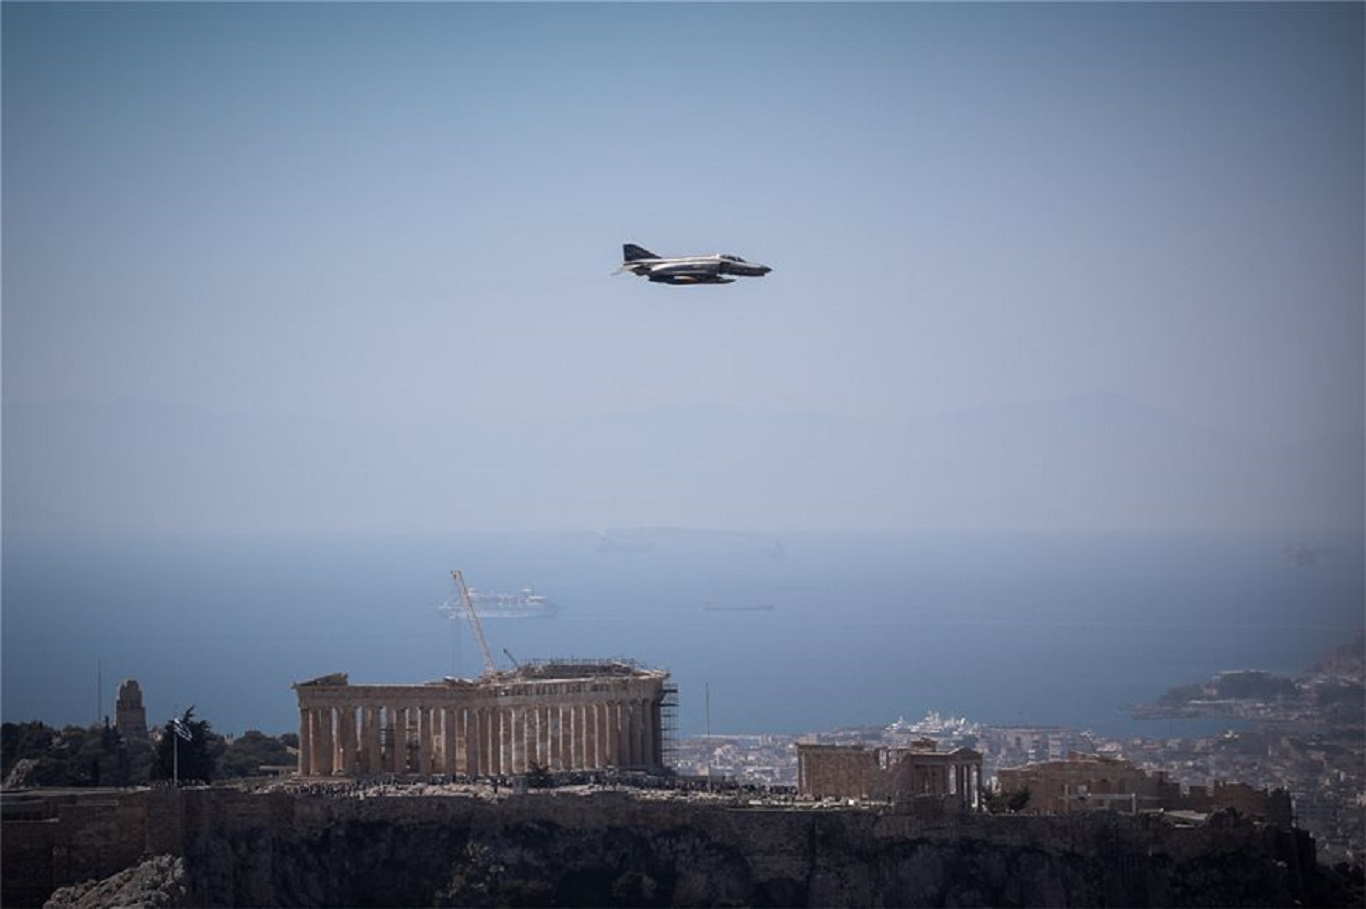 Τα επιβλητικά μαχητικά αεροσκάφη πετούν πάνω από την Αθήνα και δημιουργούν εντυπωσιακές εικόνες (φωτο)